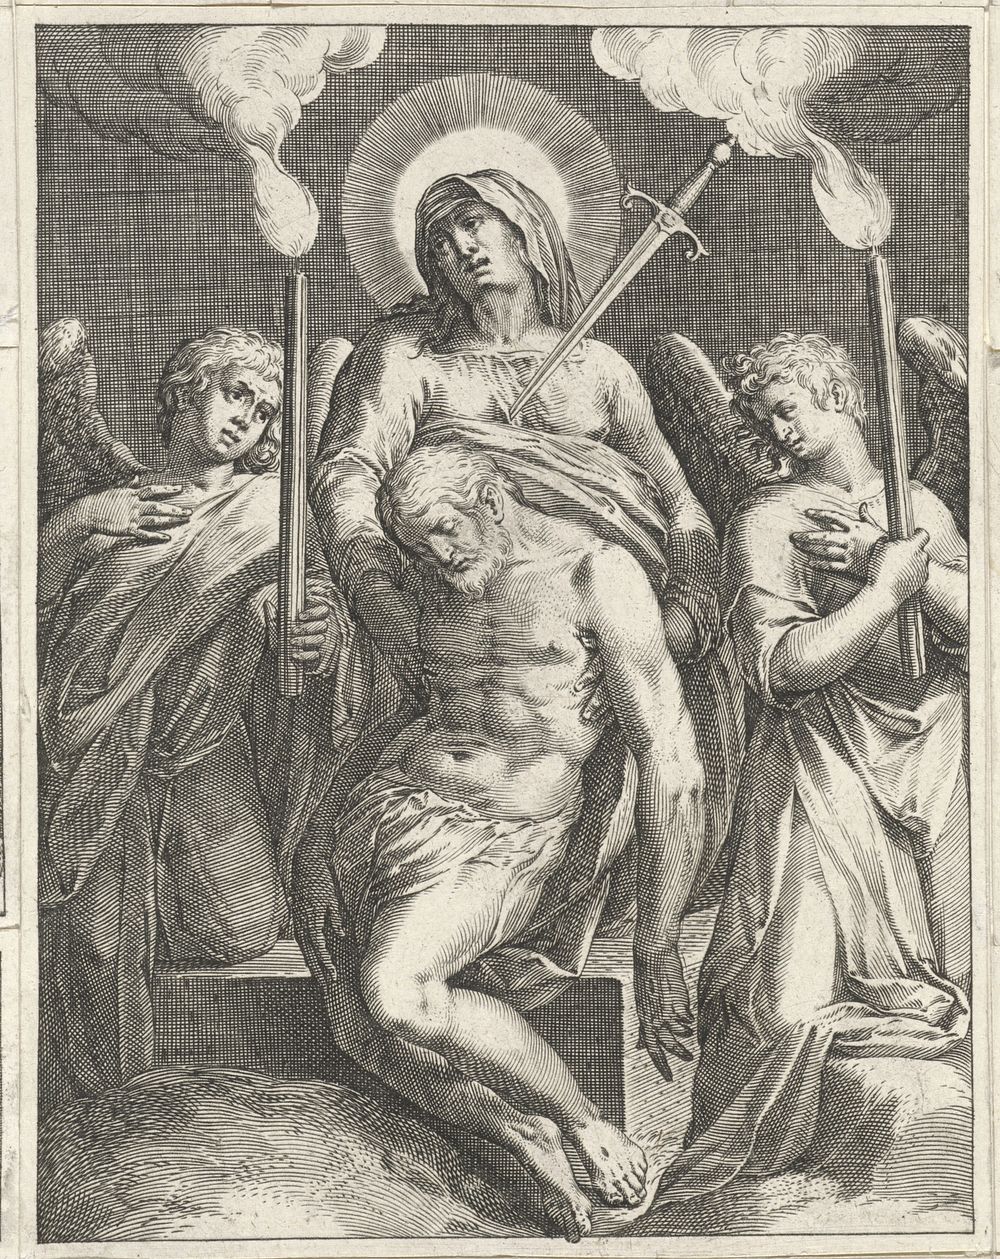 Pietà (1580 - 1600) by Johann Sadeler I, Hieronymus Wierix and Taddeo Zuccaro